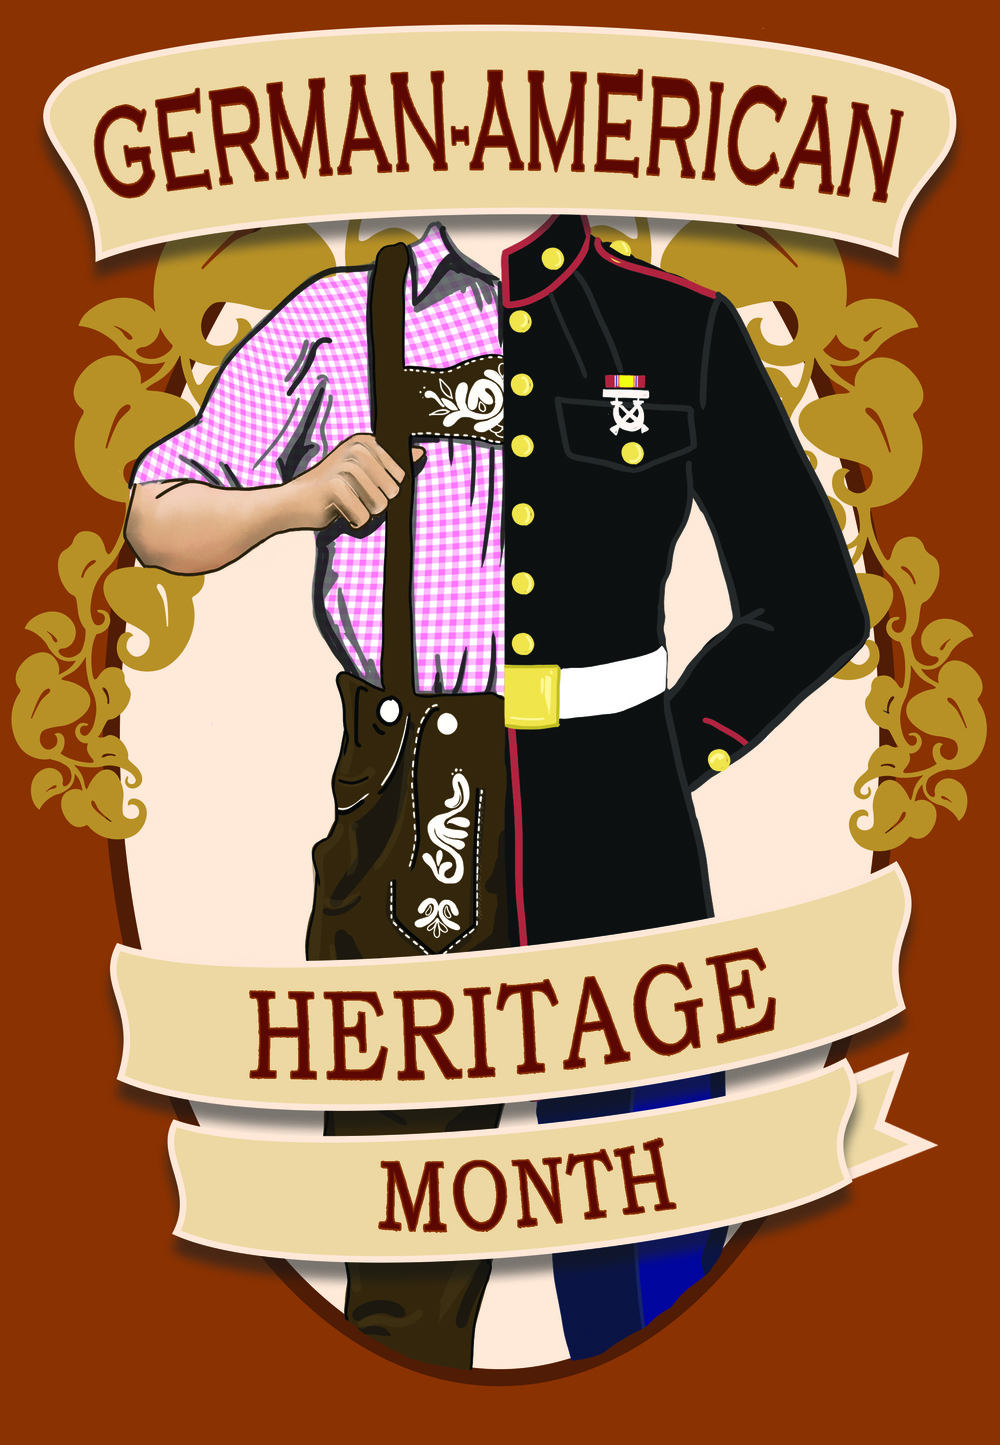 German-American Heritage Month